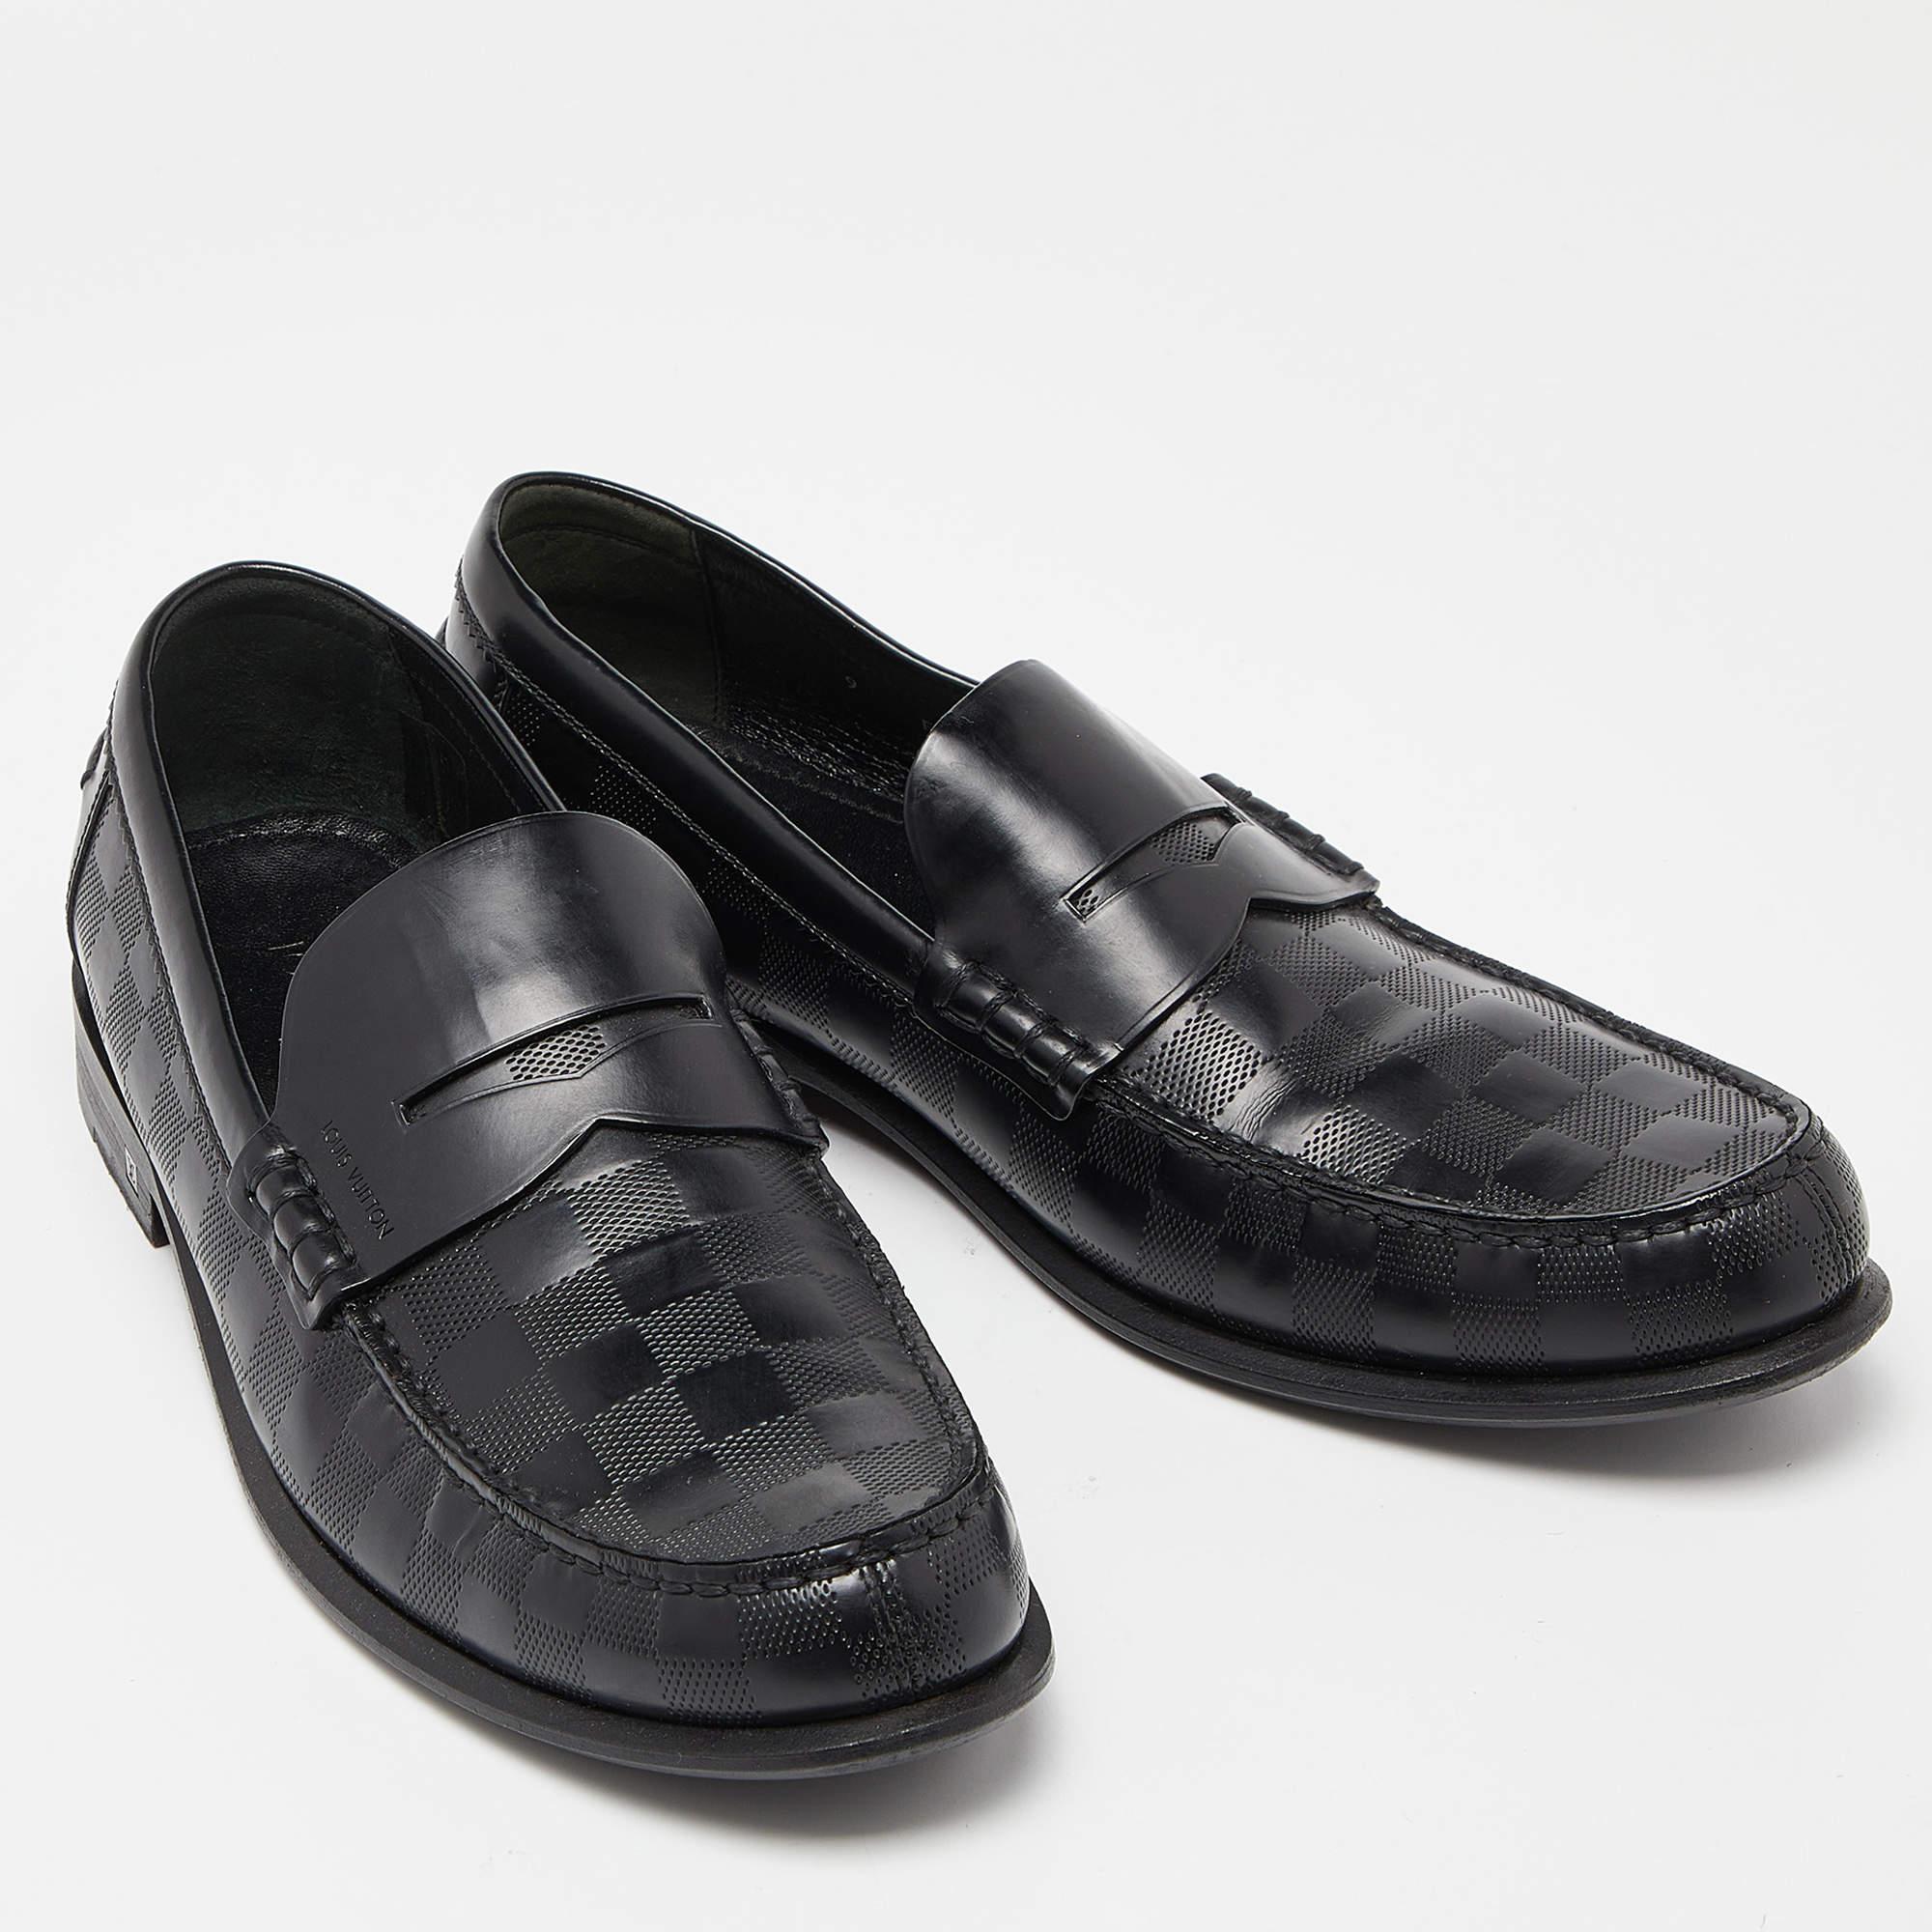 Louis Vuitton Black Damier Infini Leather Santiago Loafers Size 43 1